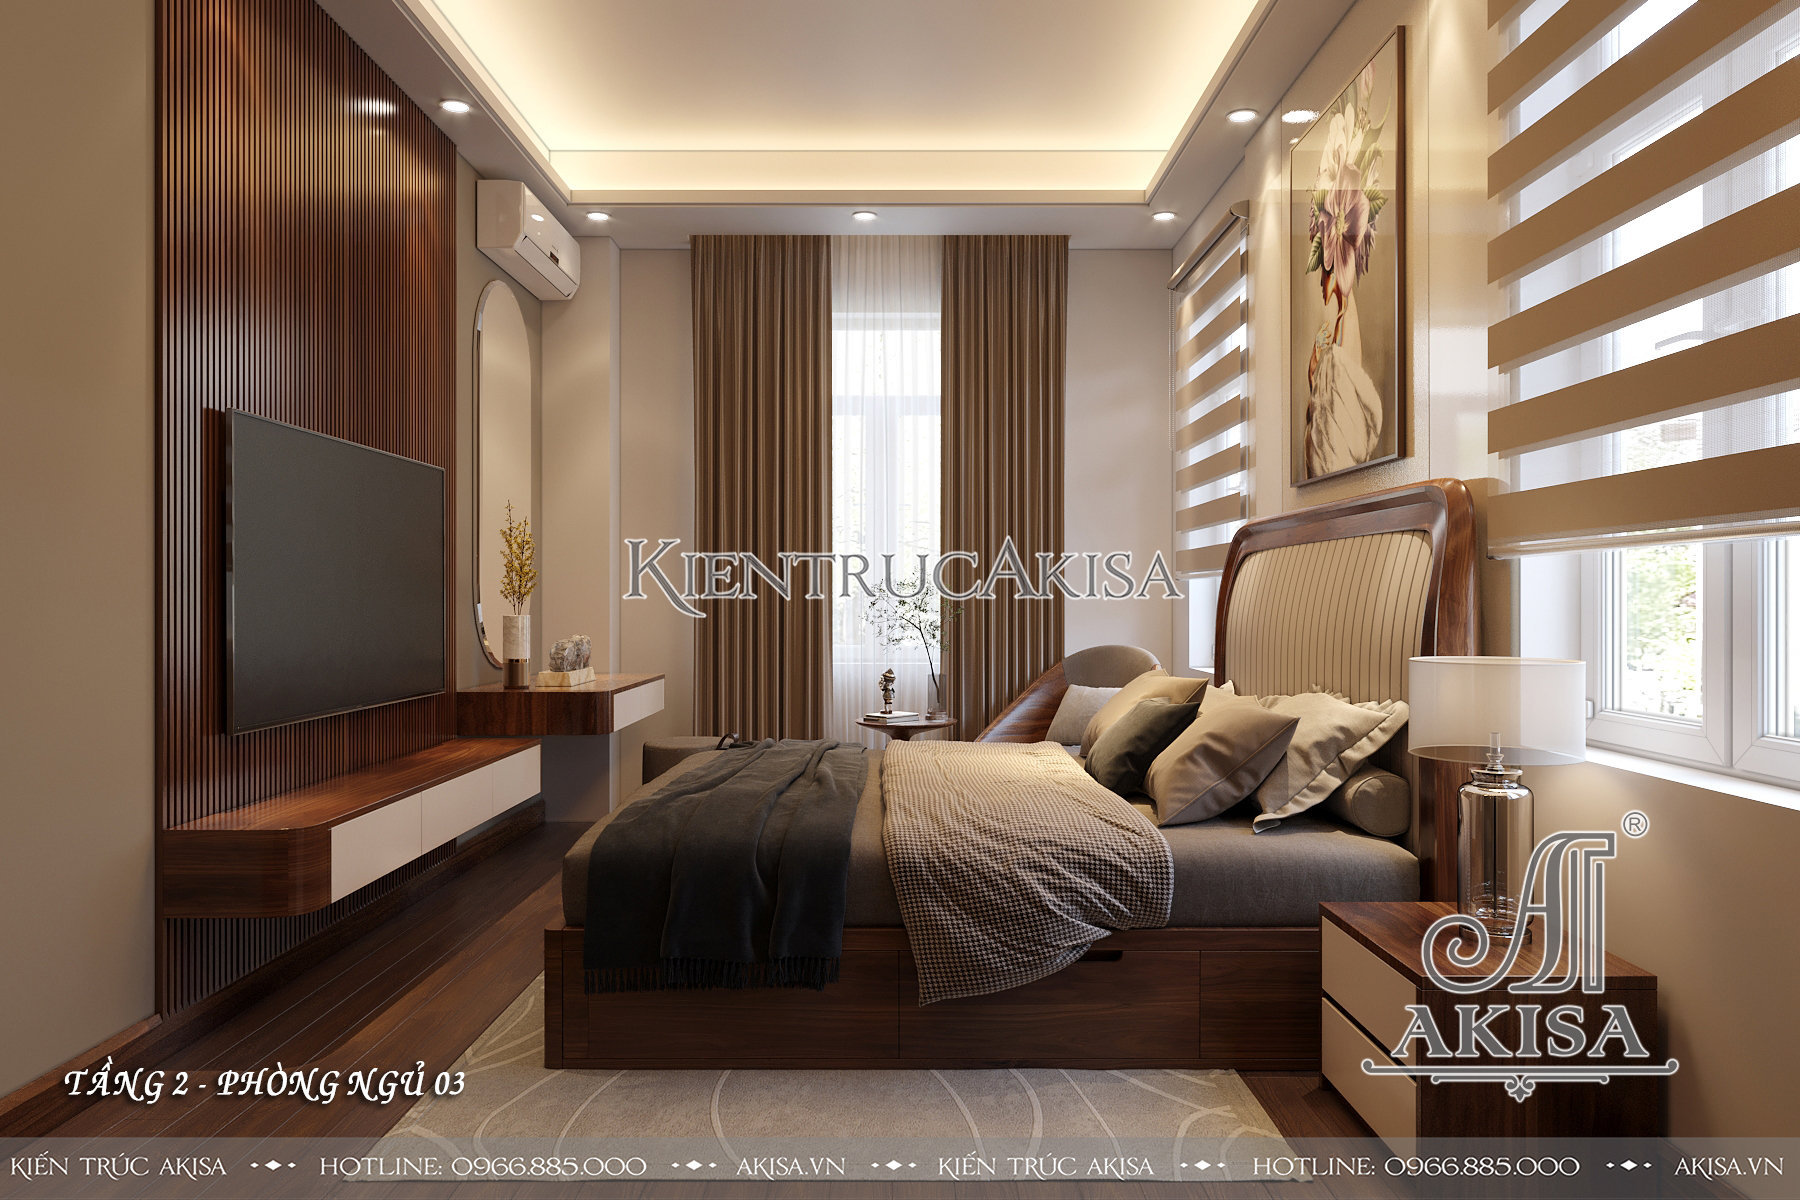 Mẫu nội thất gỗ óc chó kết hợp gỗ công nghiệp phong cách hiện đại - Phòng ngủ